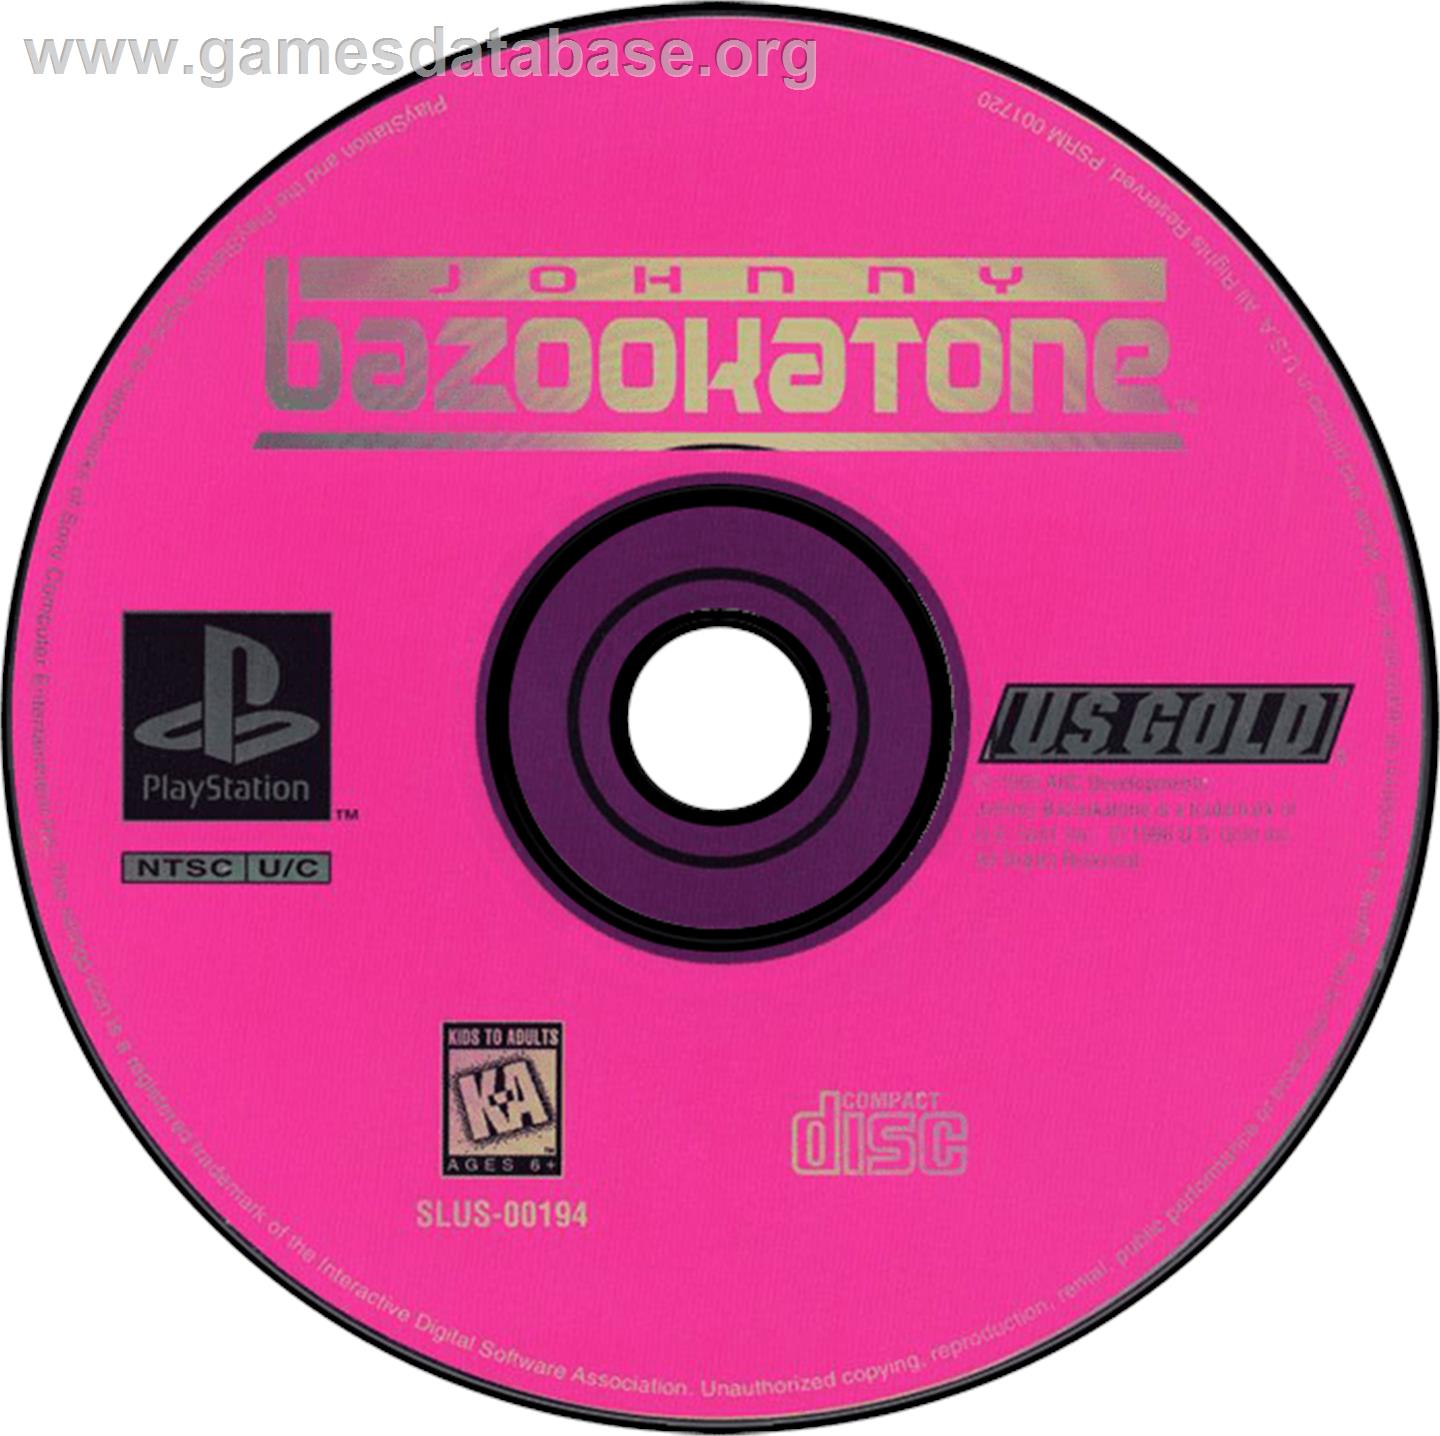 Johnny Bazookatone - Sony Playstation - Artwork - Disc